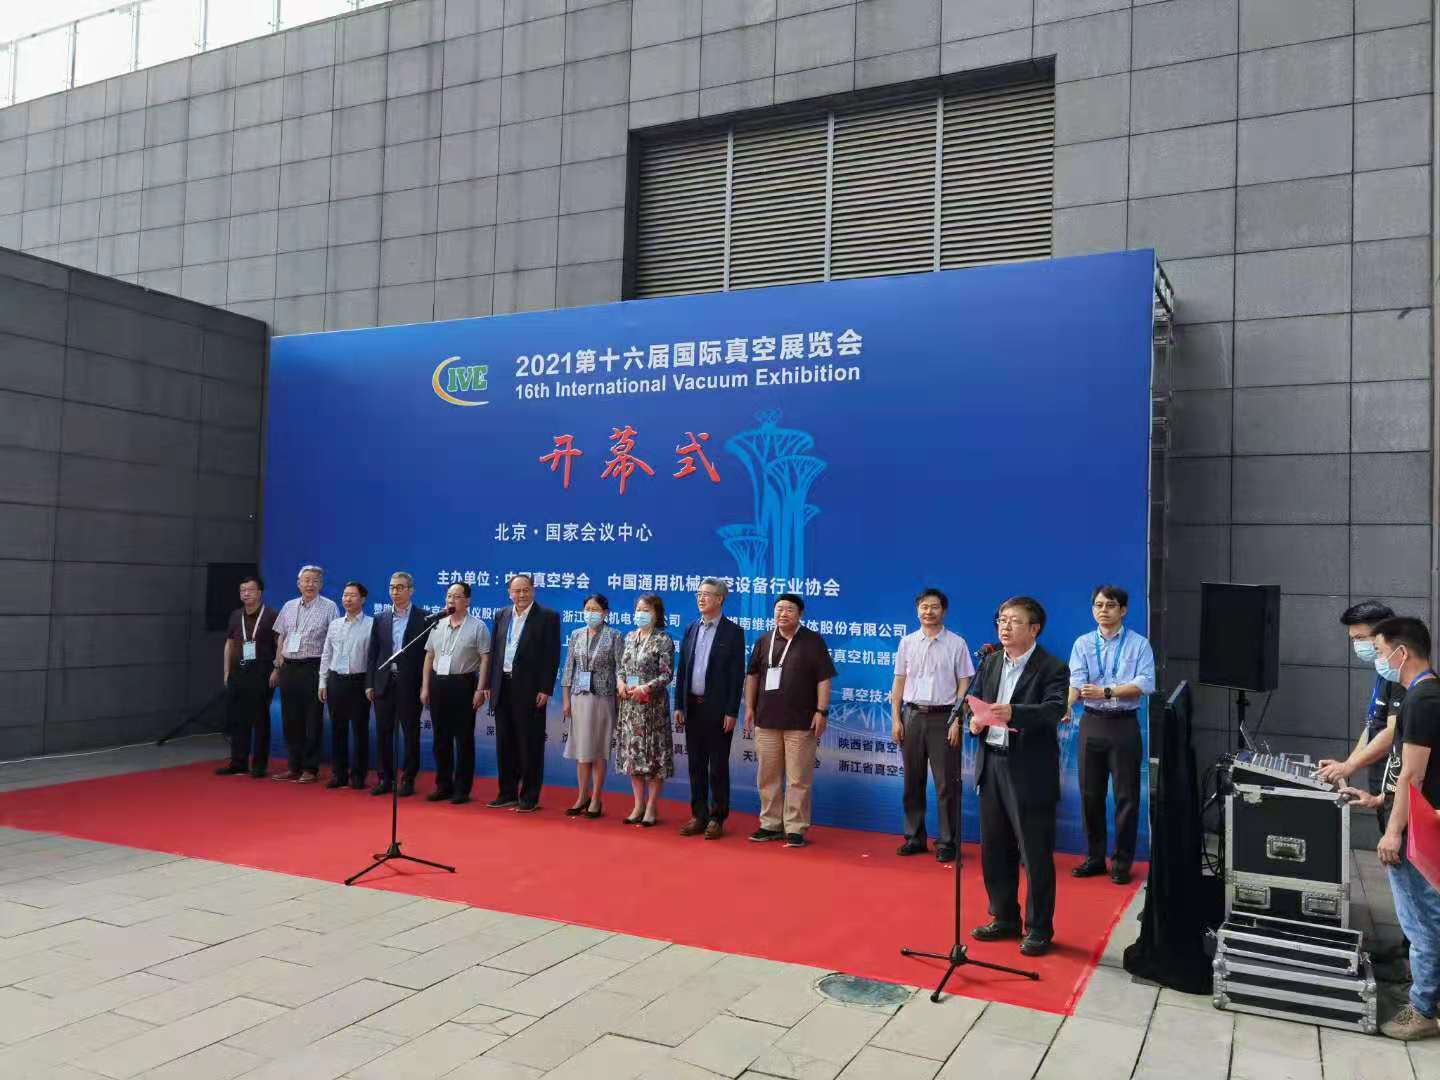 千嬴游戏官网2021年第十六届国际真空展览会